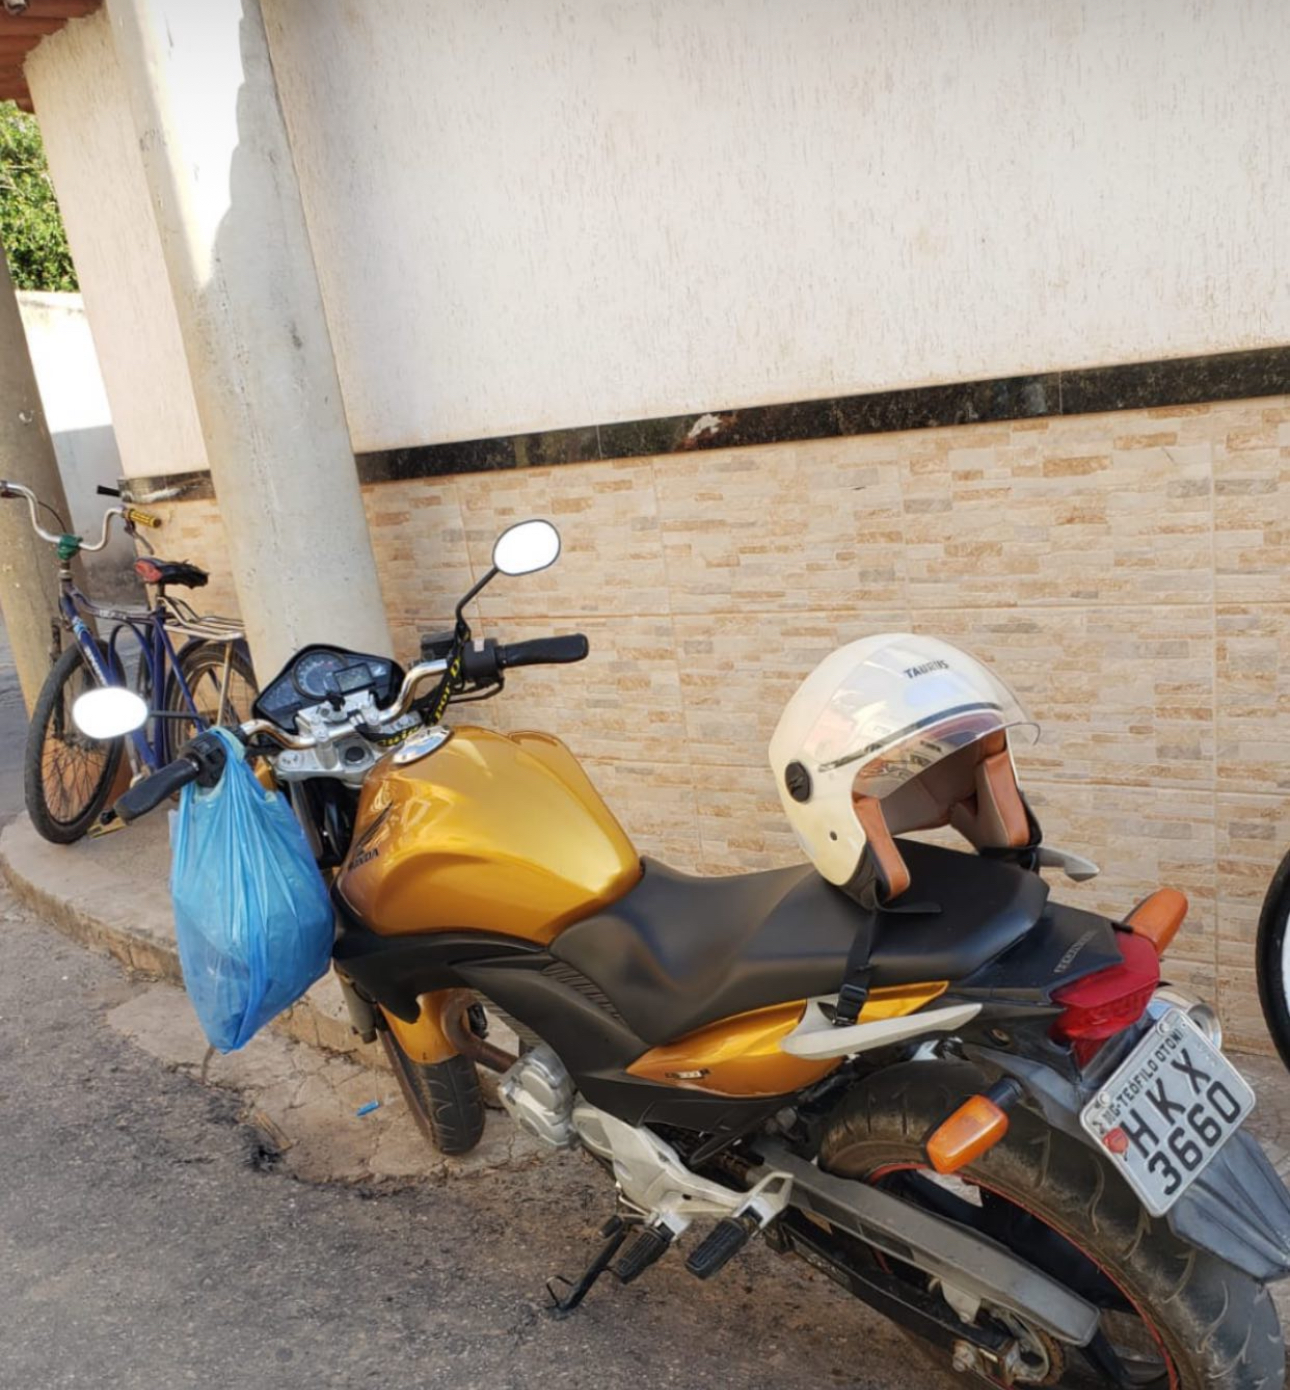 “Perdeu, perdeu”: Homens armados rendem motociclista e levam moto em Teófilo Otoni